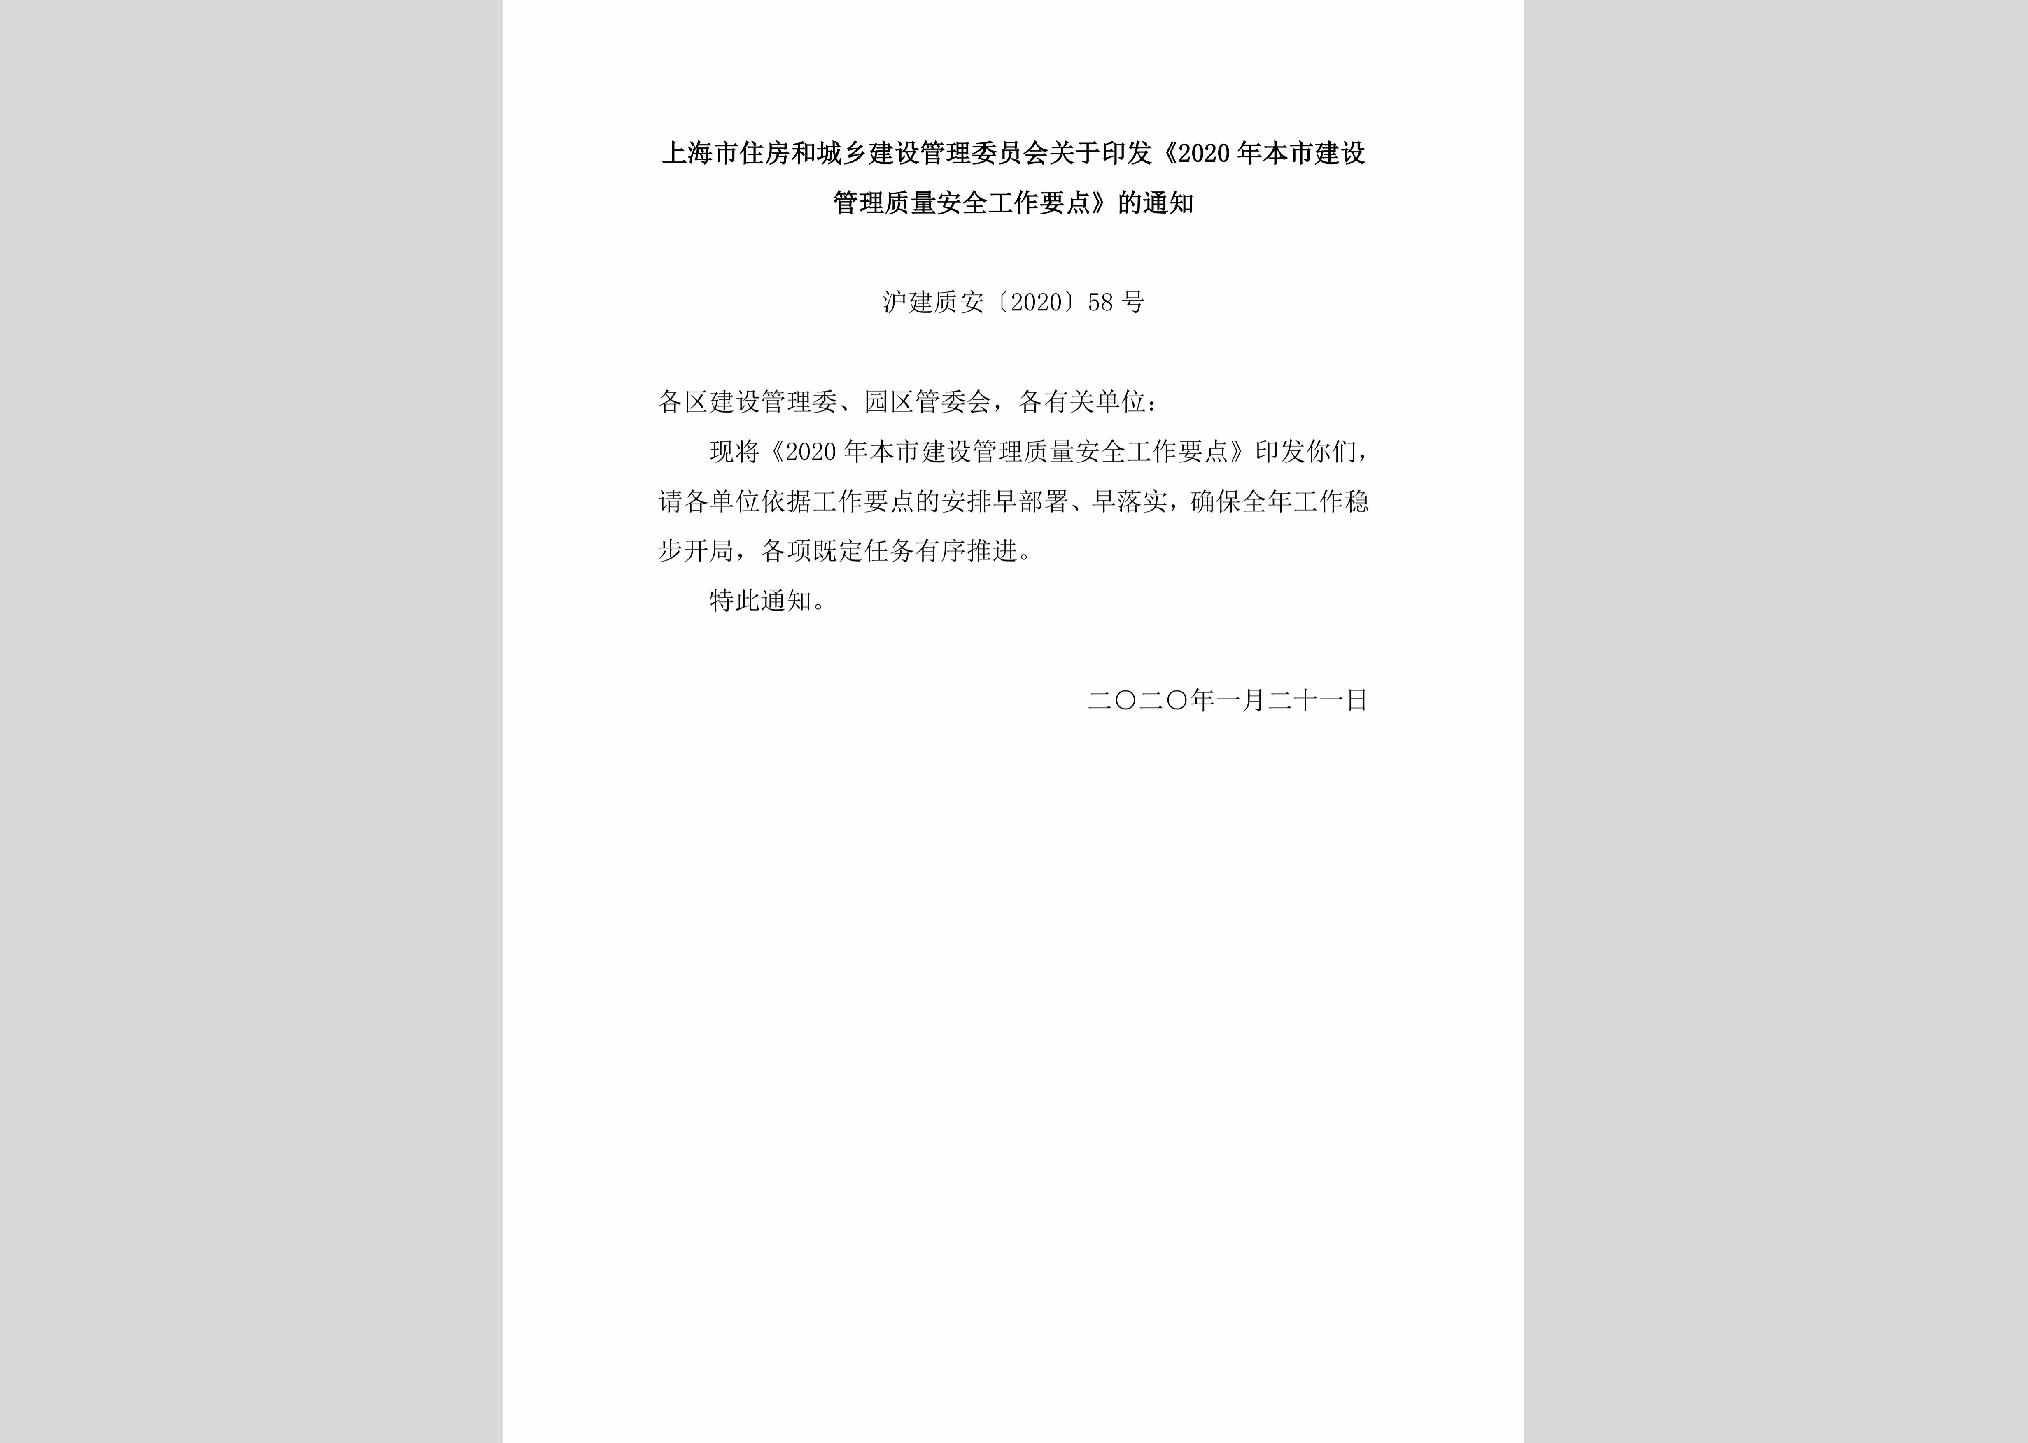 沪建质安[2020]58号：上海市住房和城乡建设管理委员会关于印发《2020年本市建设管理质量安全工作要点》的通知